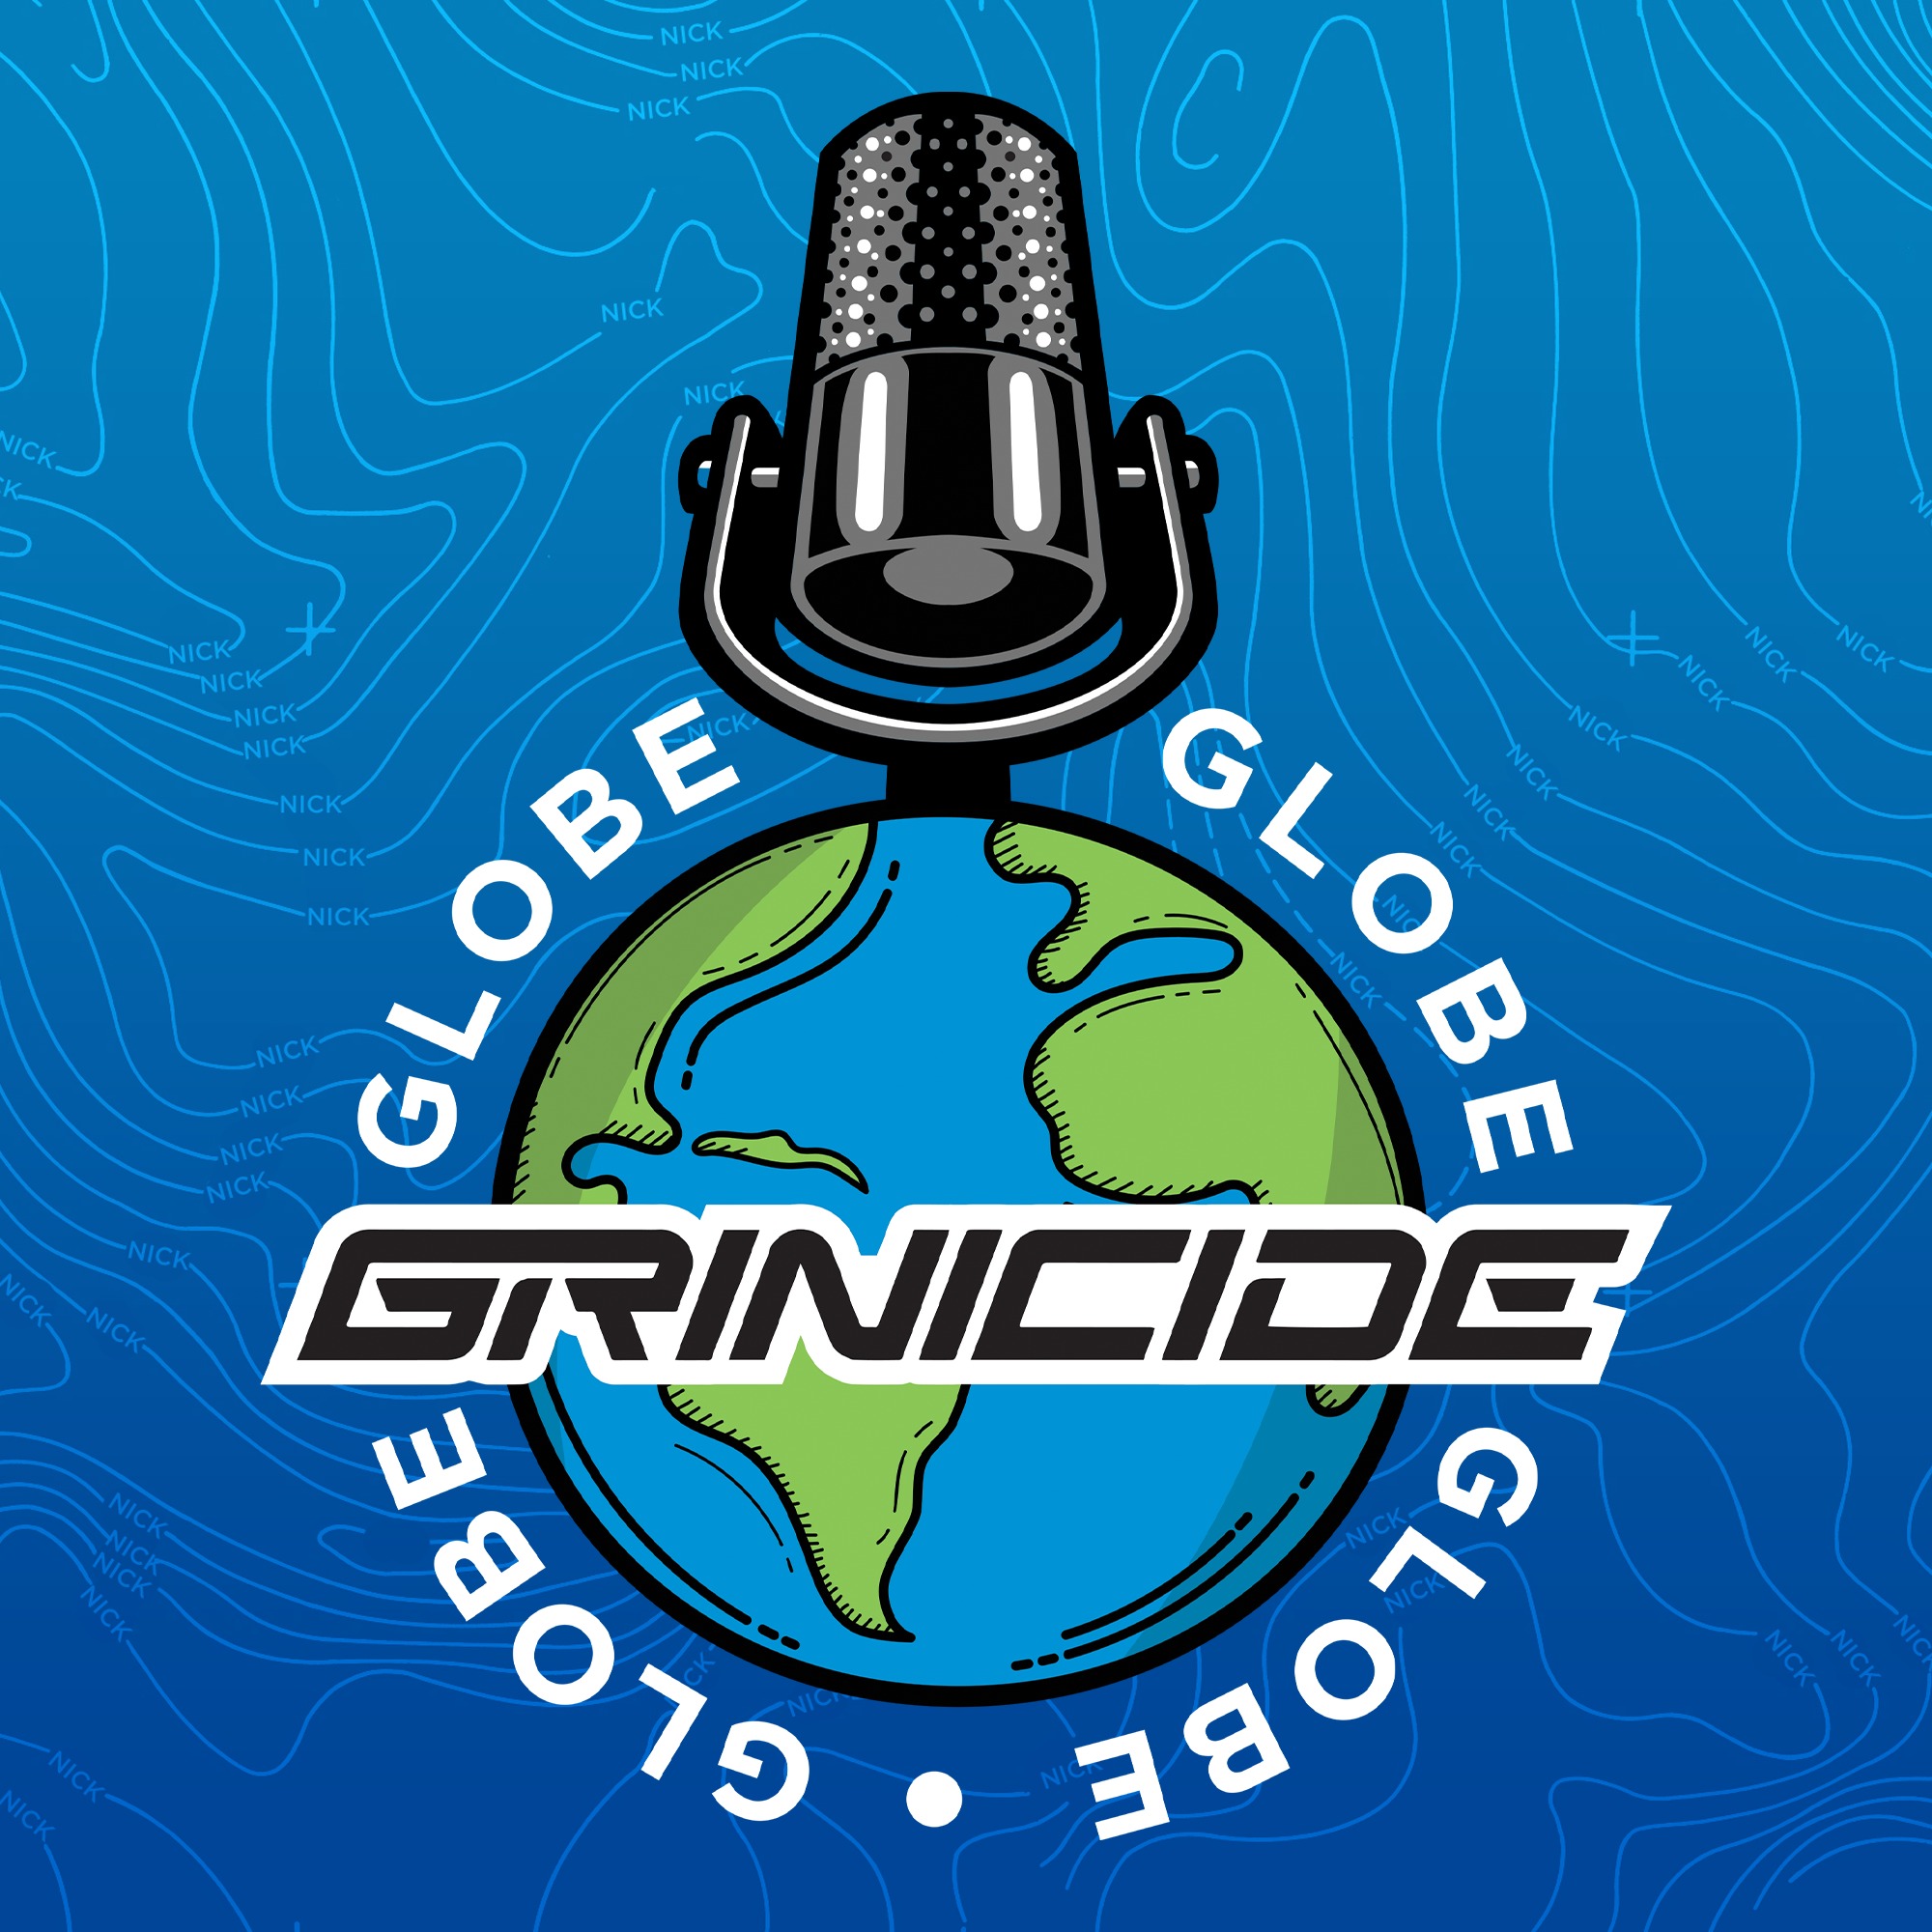 Grinicide's Globe